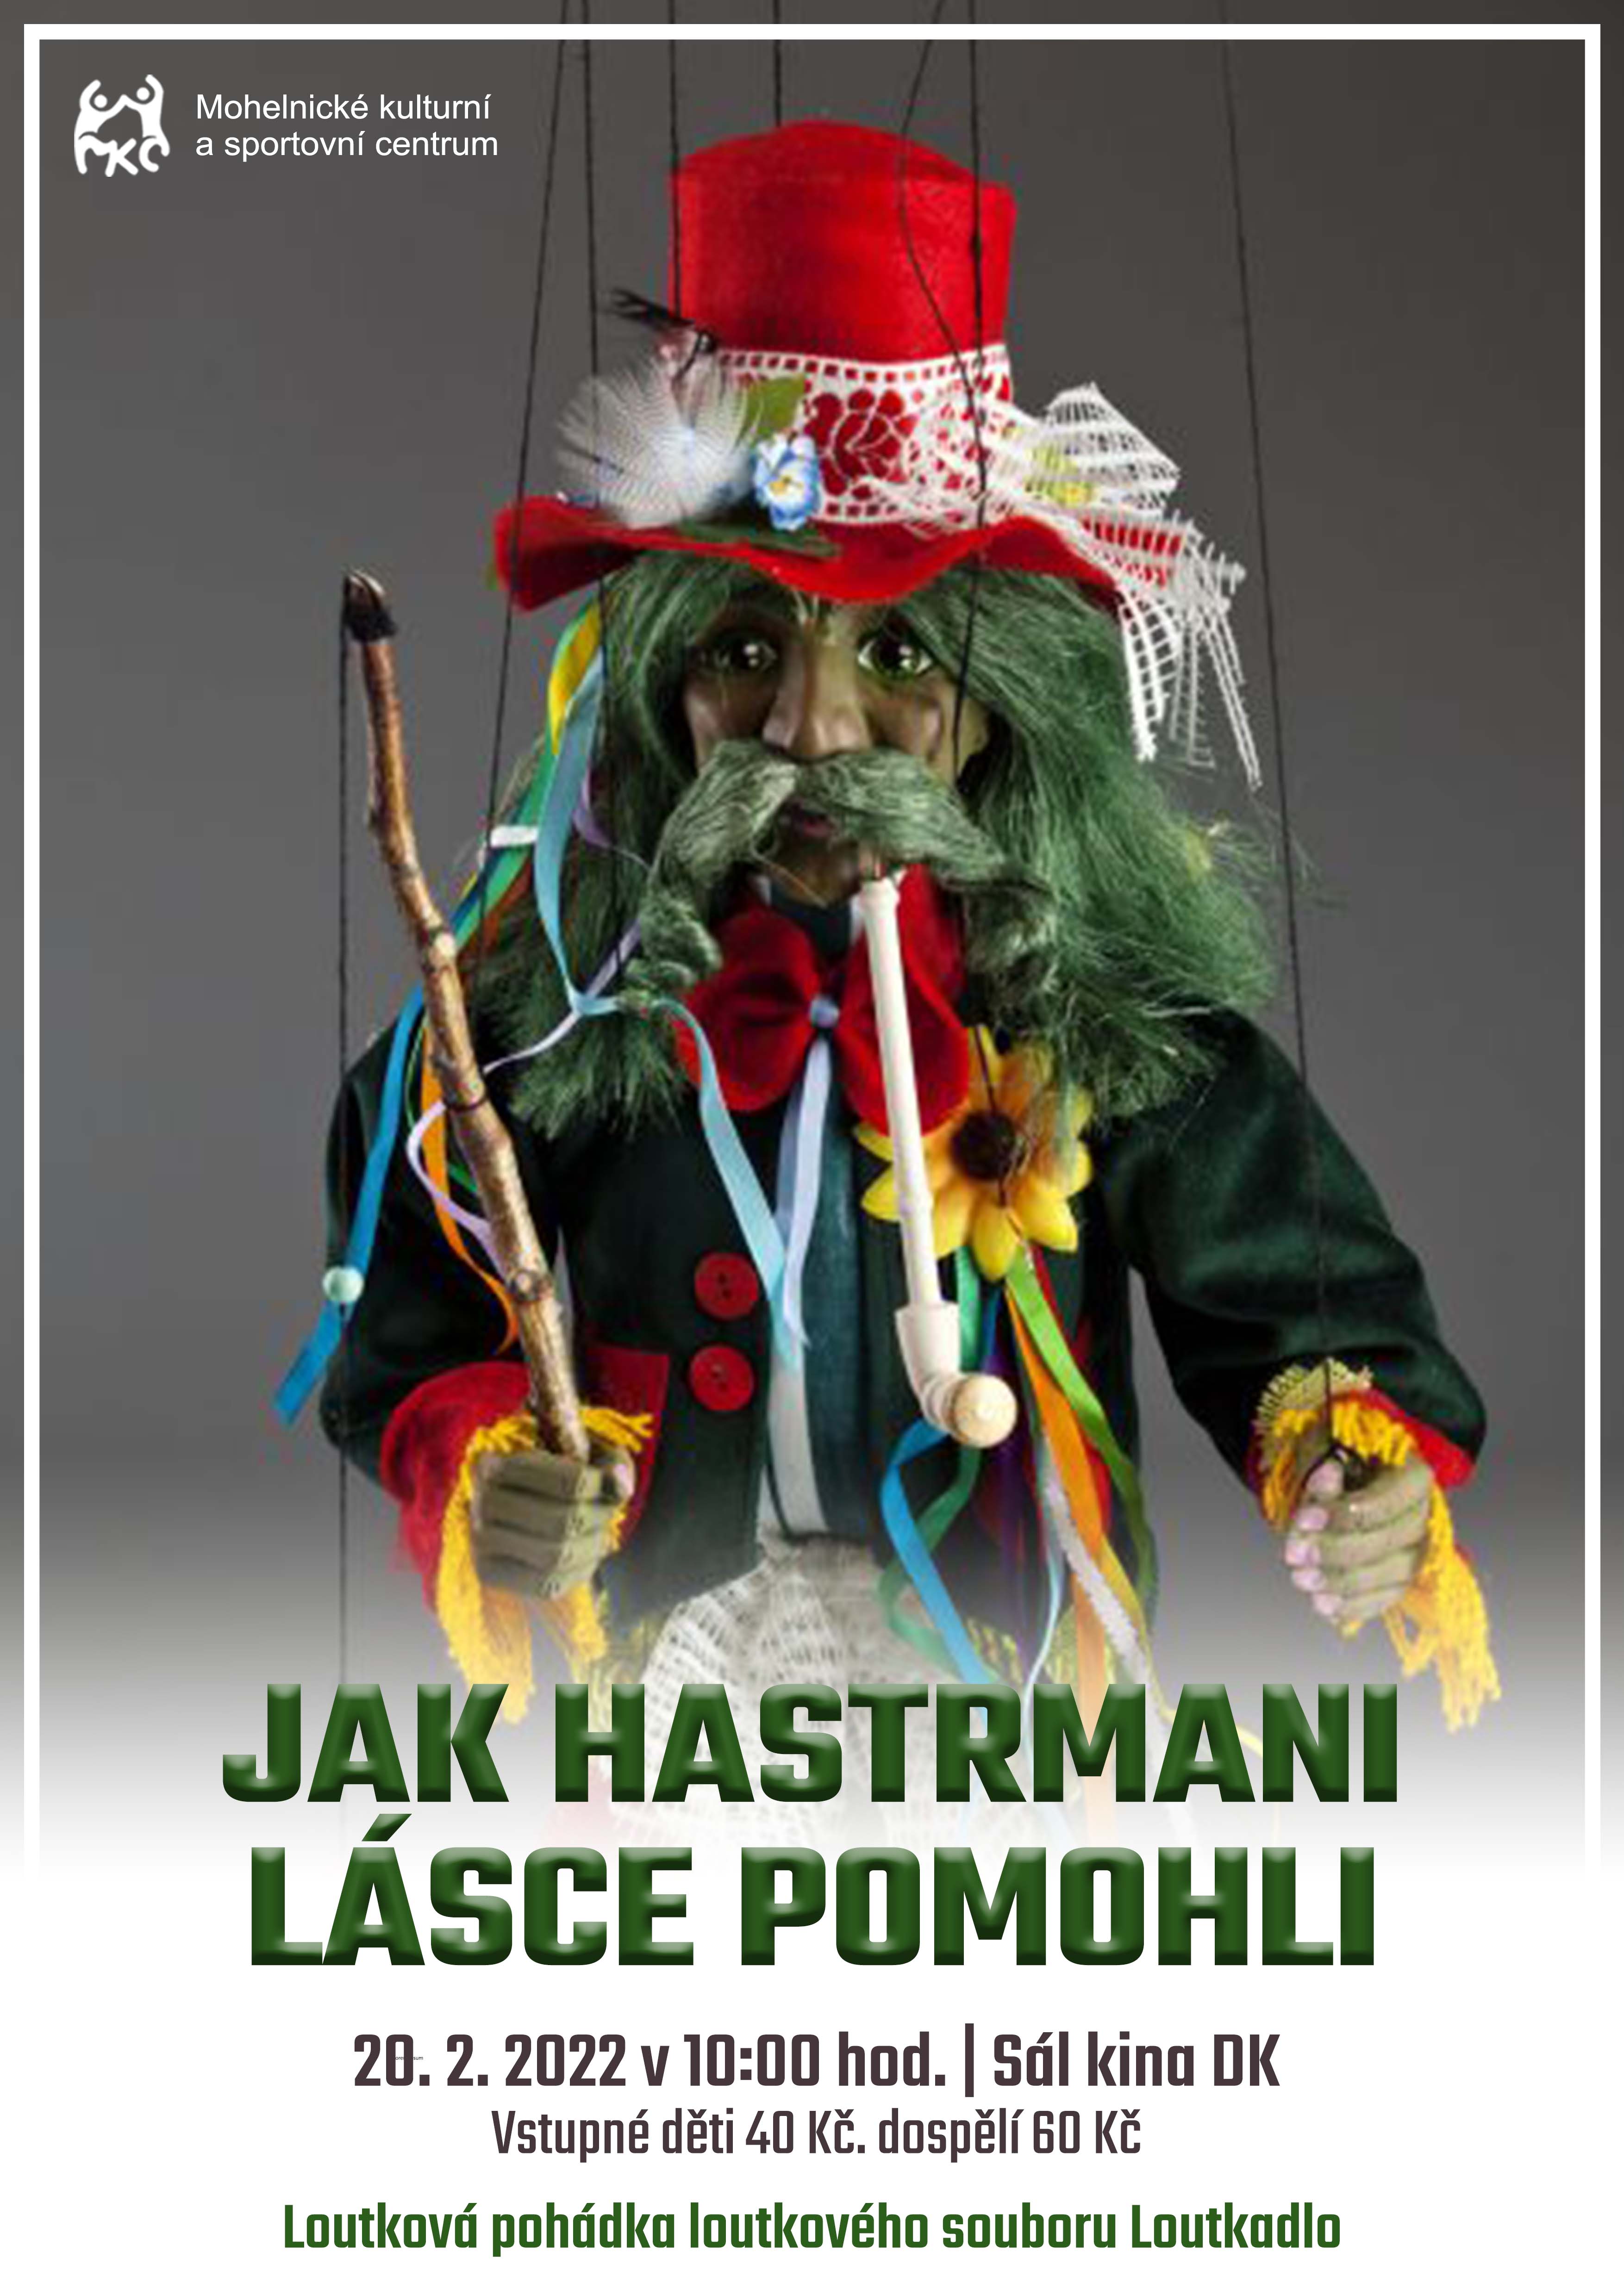 www.mks-mohelnice.cz/akce/8480-jak-hastrmani-lasce-pomohli-0ilu